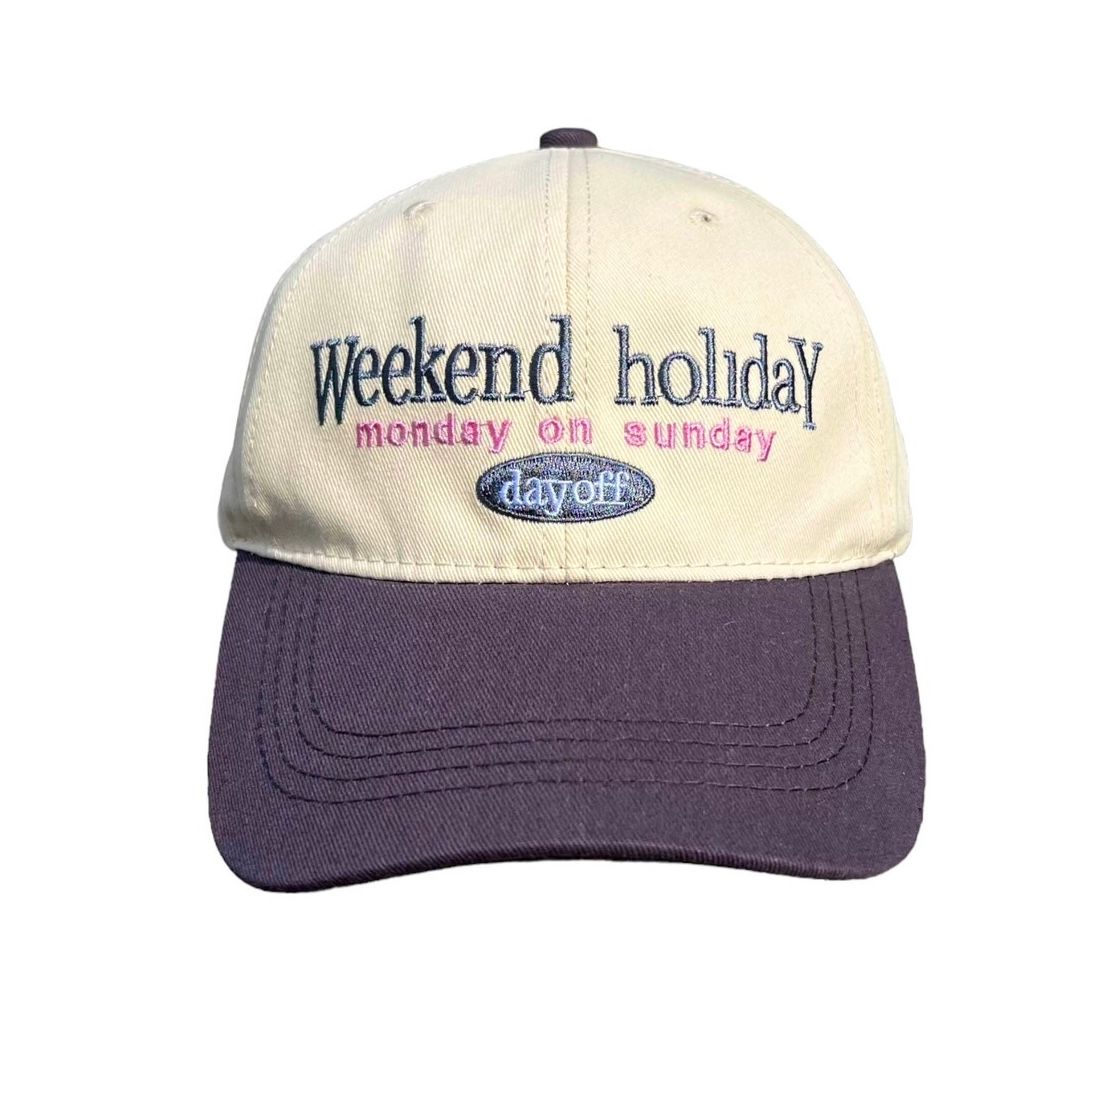 ベースボールキャップ 企業ロゴ USA アメリカ古着 vintage 帽子 